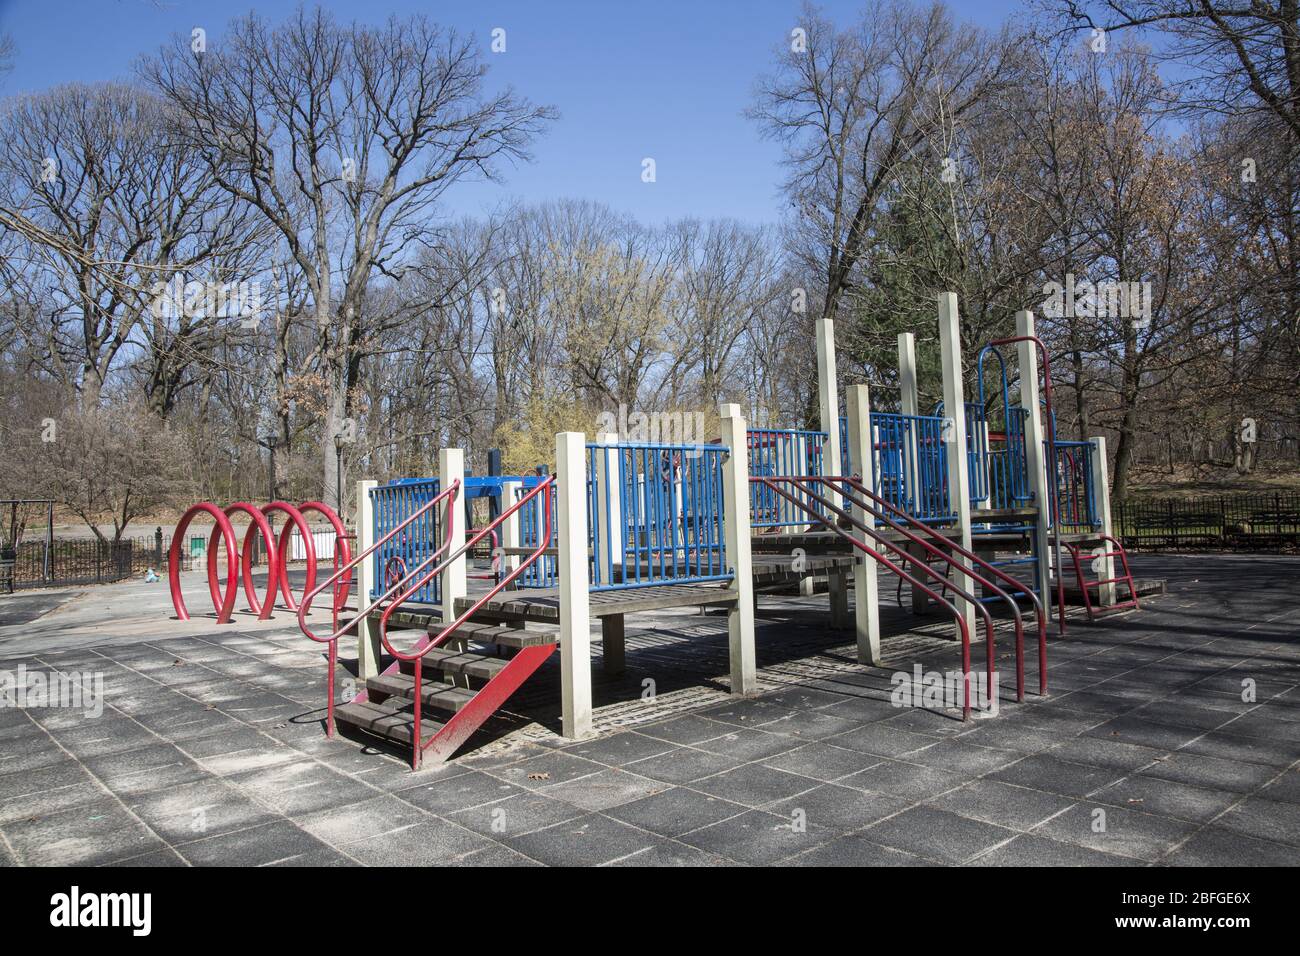 Obwohl Parks offen bleiben, hat New York City Spielplätze geschlossen, um die Ausbreitung des Coronavirus zu verhindern. Playground, Brooklyn, New York. Stockfoto